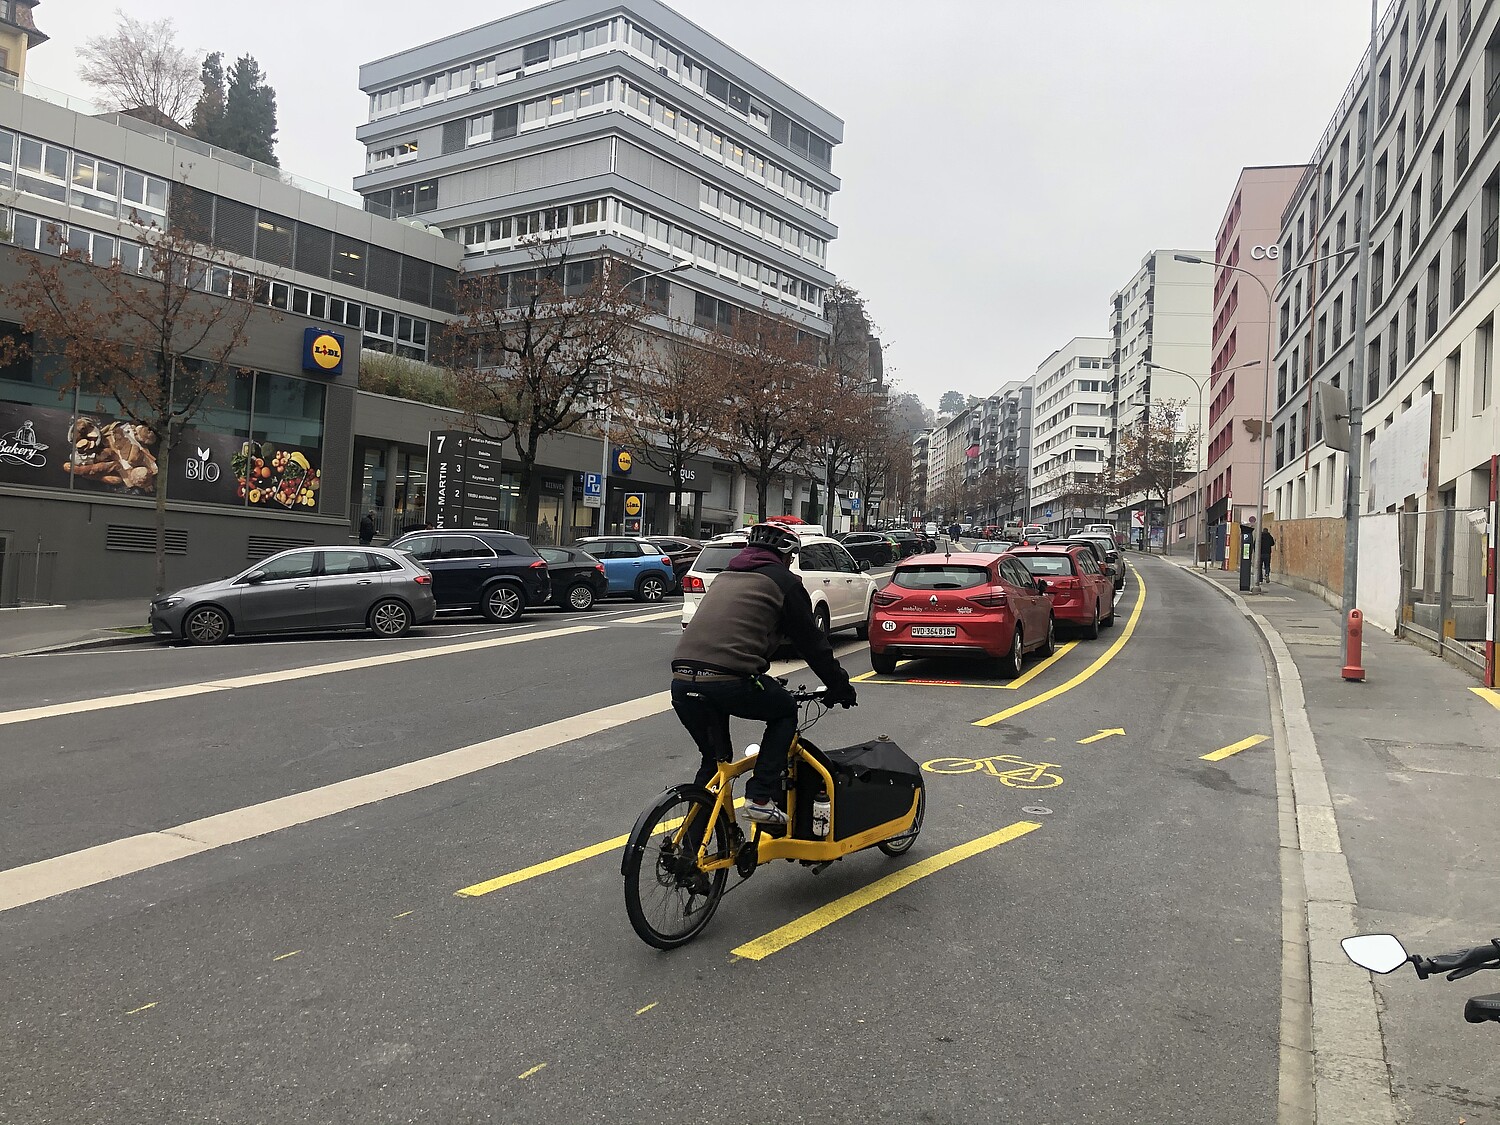 Losanna, rue Saint-Martin: la nuova pista ciclabile, situata dietro una fila di parcheggi, separa l’area ciclabile da quella per i veicoli a motore, aumentando così la sensazione di sicurezza.